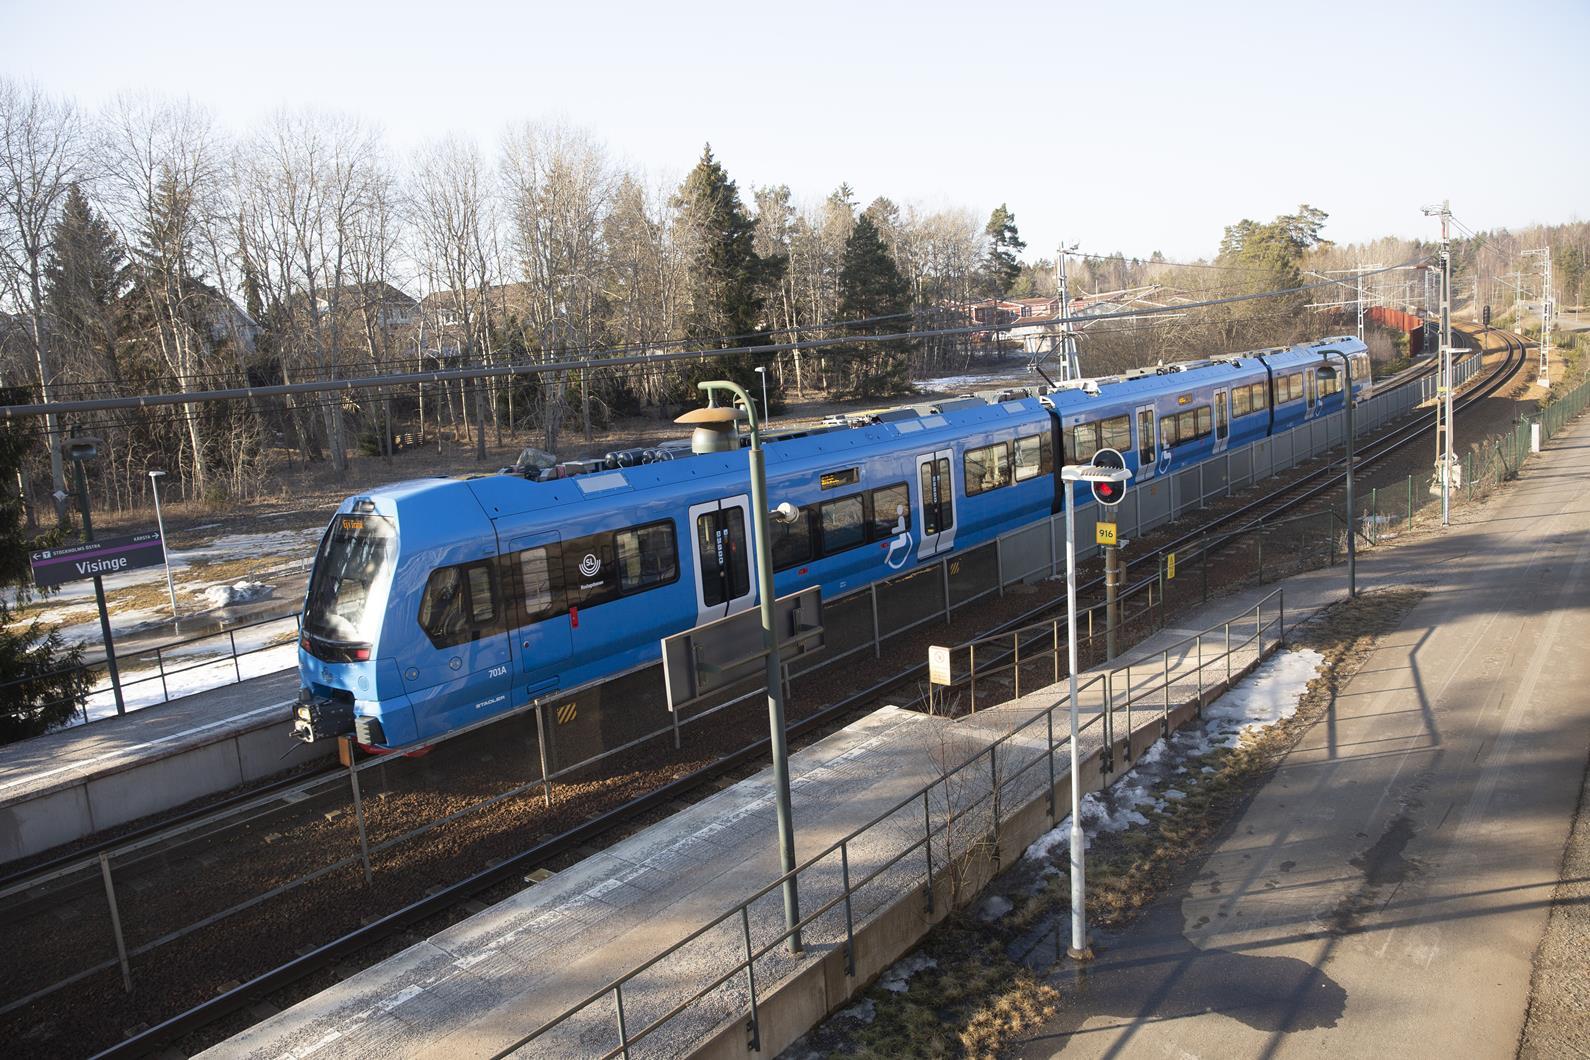 X15r narrow gauge EMU by Stadler at Visinge station